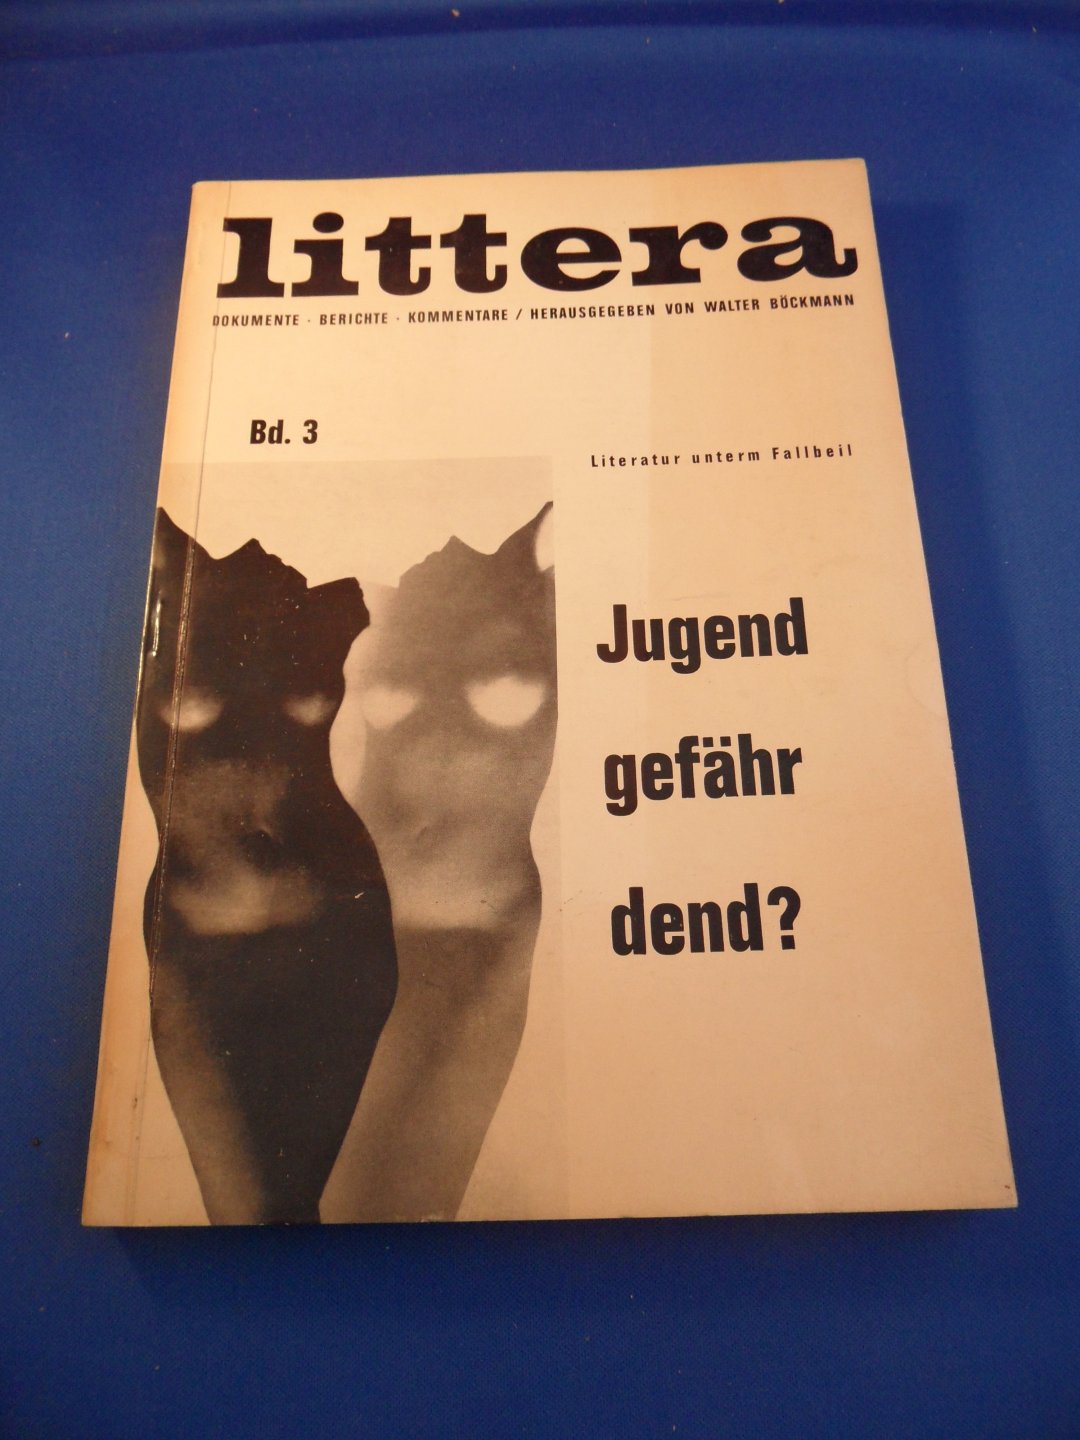  - Littera Bd. 3.  Dokumente Berichte Kommentare